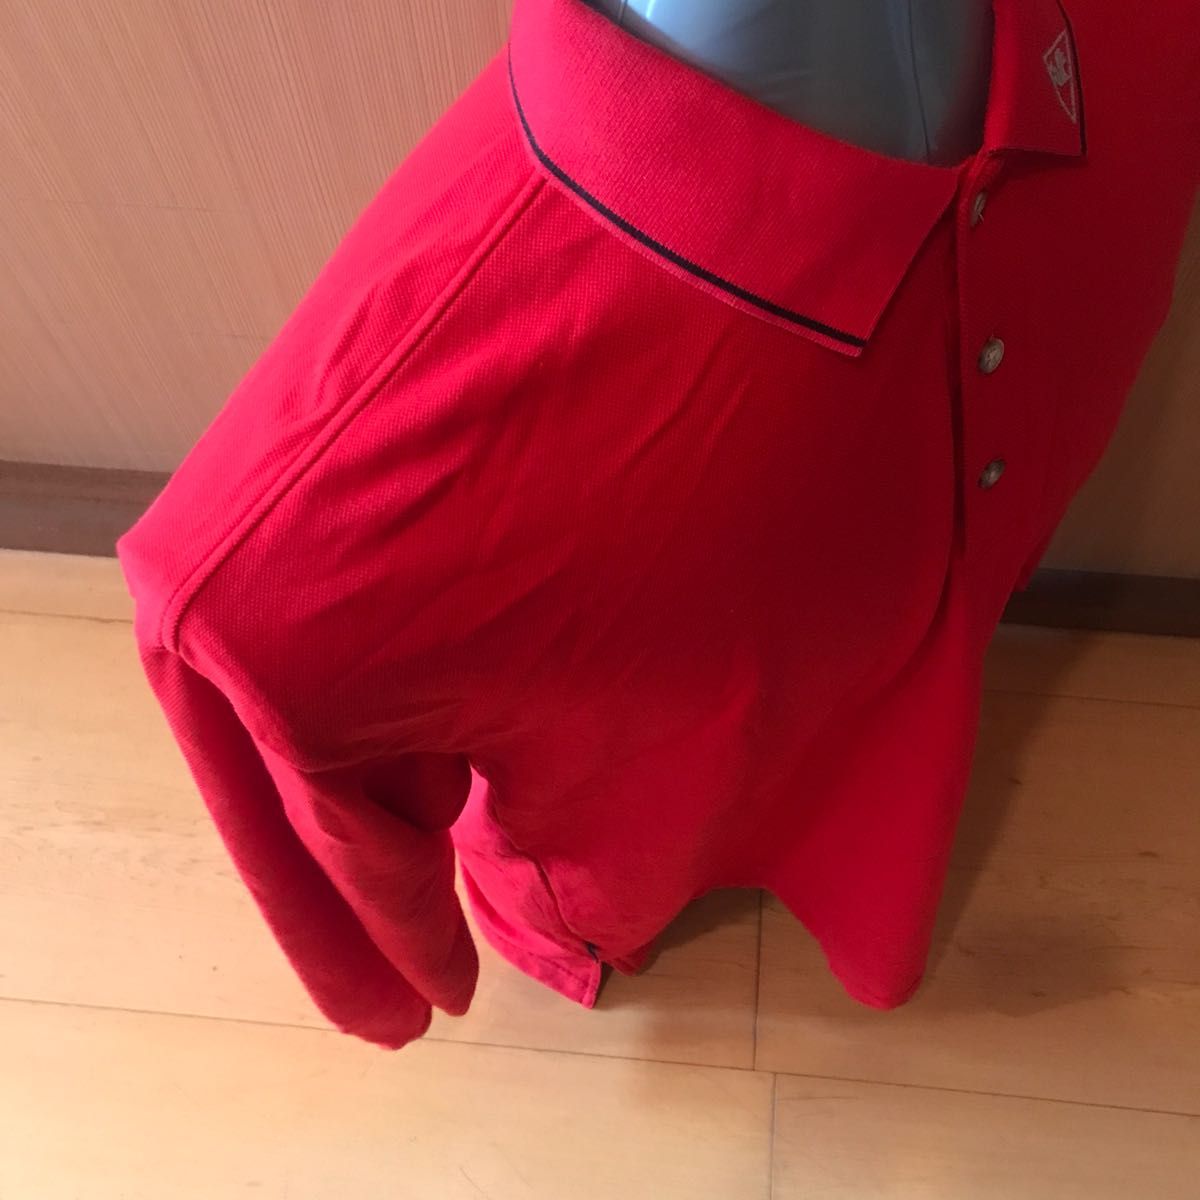 ルコック(lecoqsportif)長袖ゴルフポロシャツ(QG1007)赤メンズLサイズ中古品